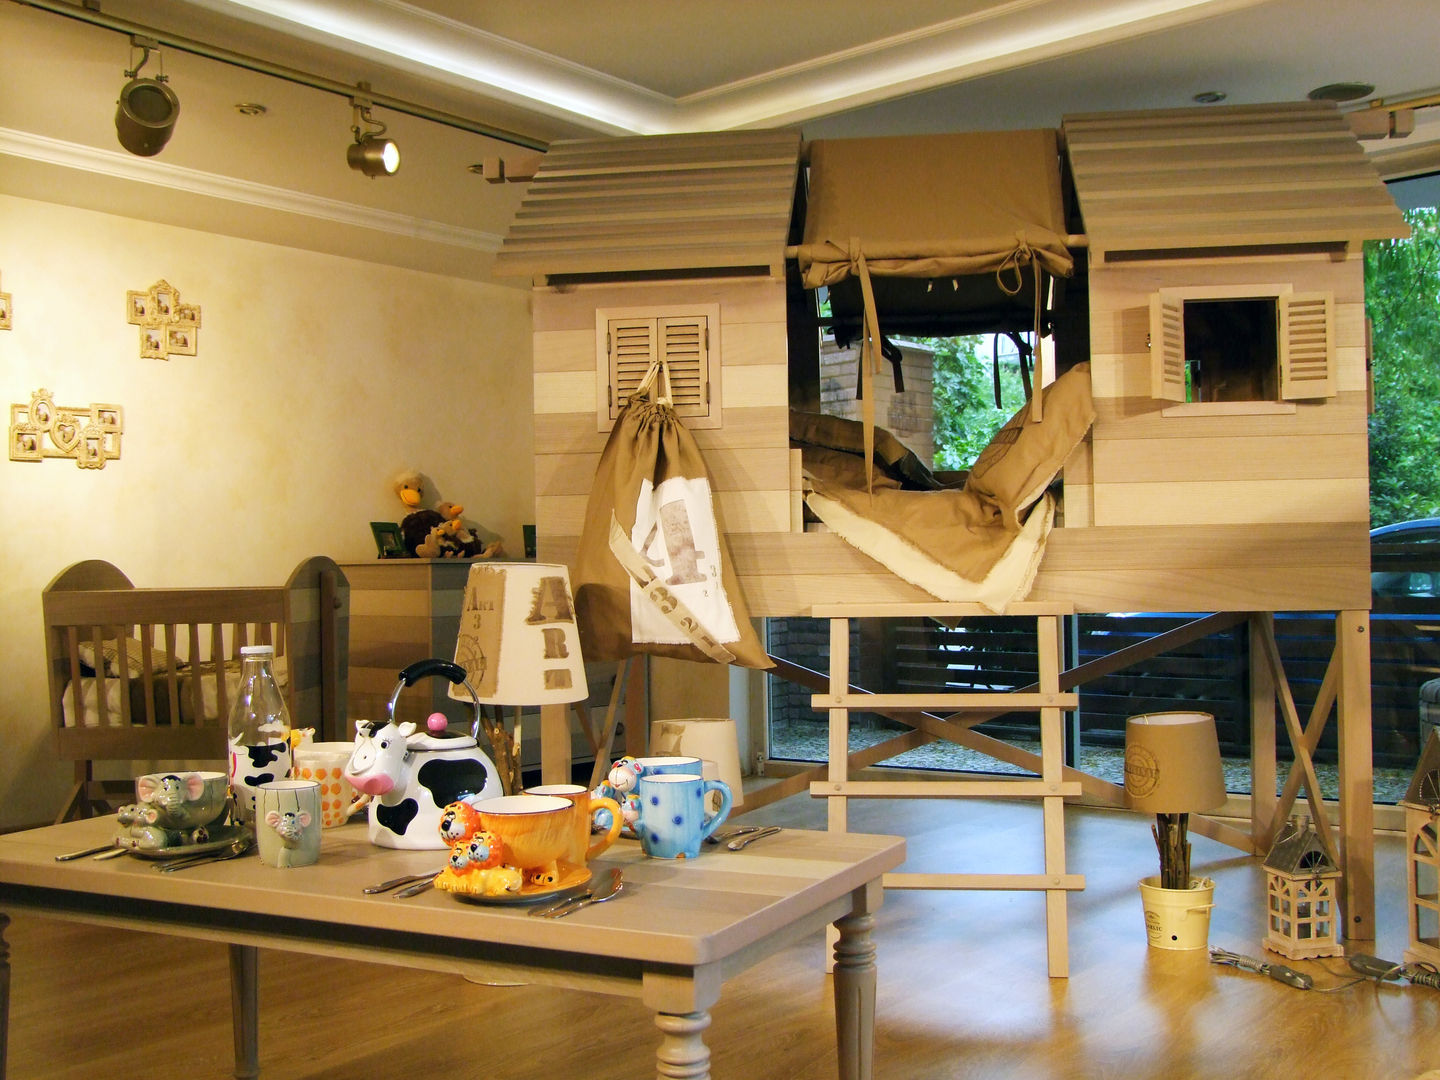 LACOTE Çiftlik temalı bebek ve çocuk odası , Lacote Design Lacote Design Modern nursery/kids room Beds & cribs